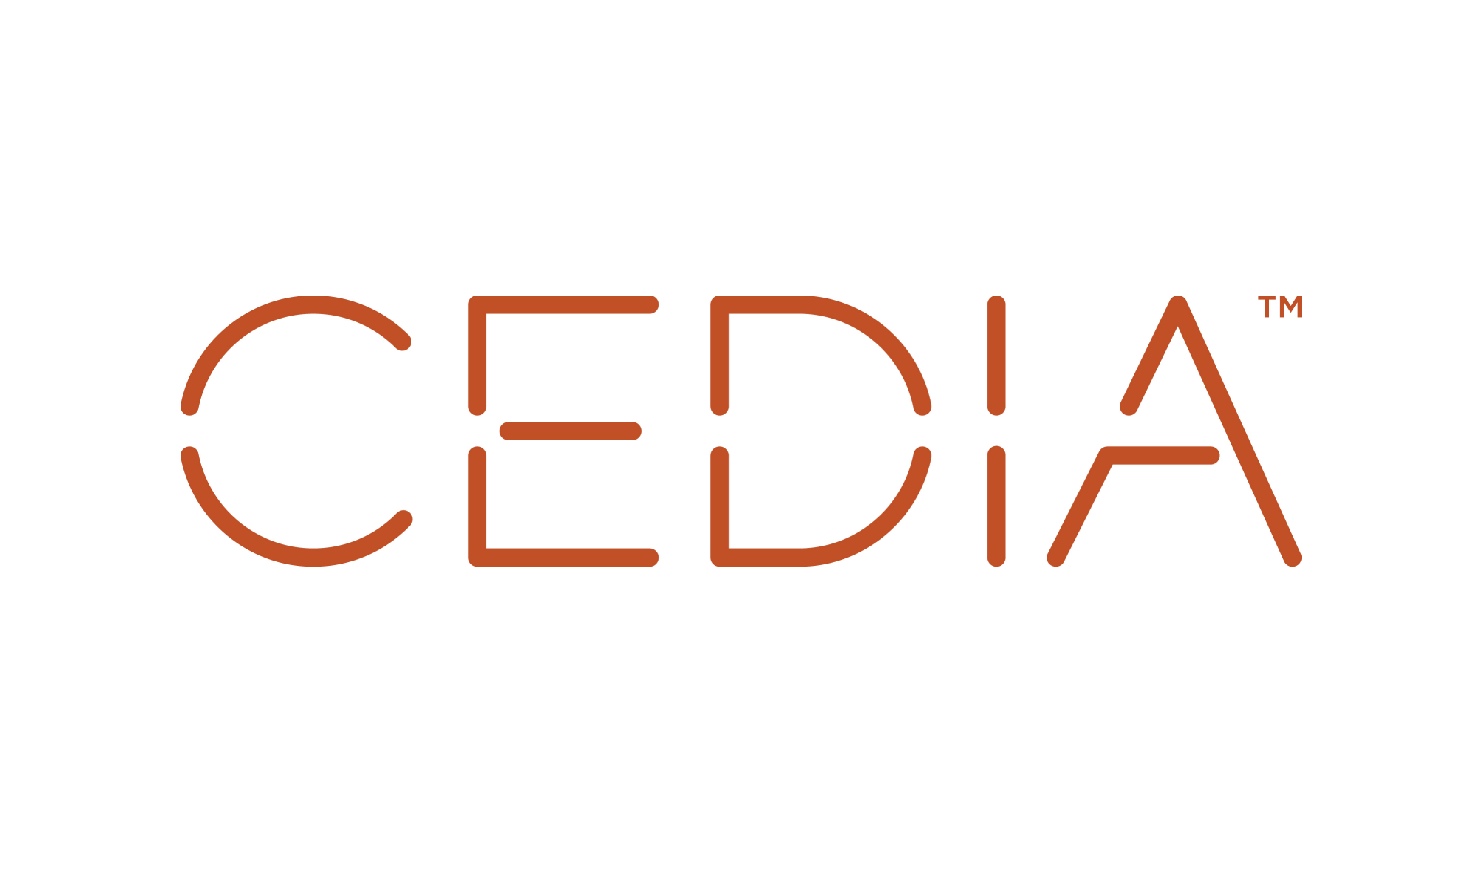 CEDIA sponsor logo